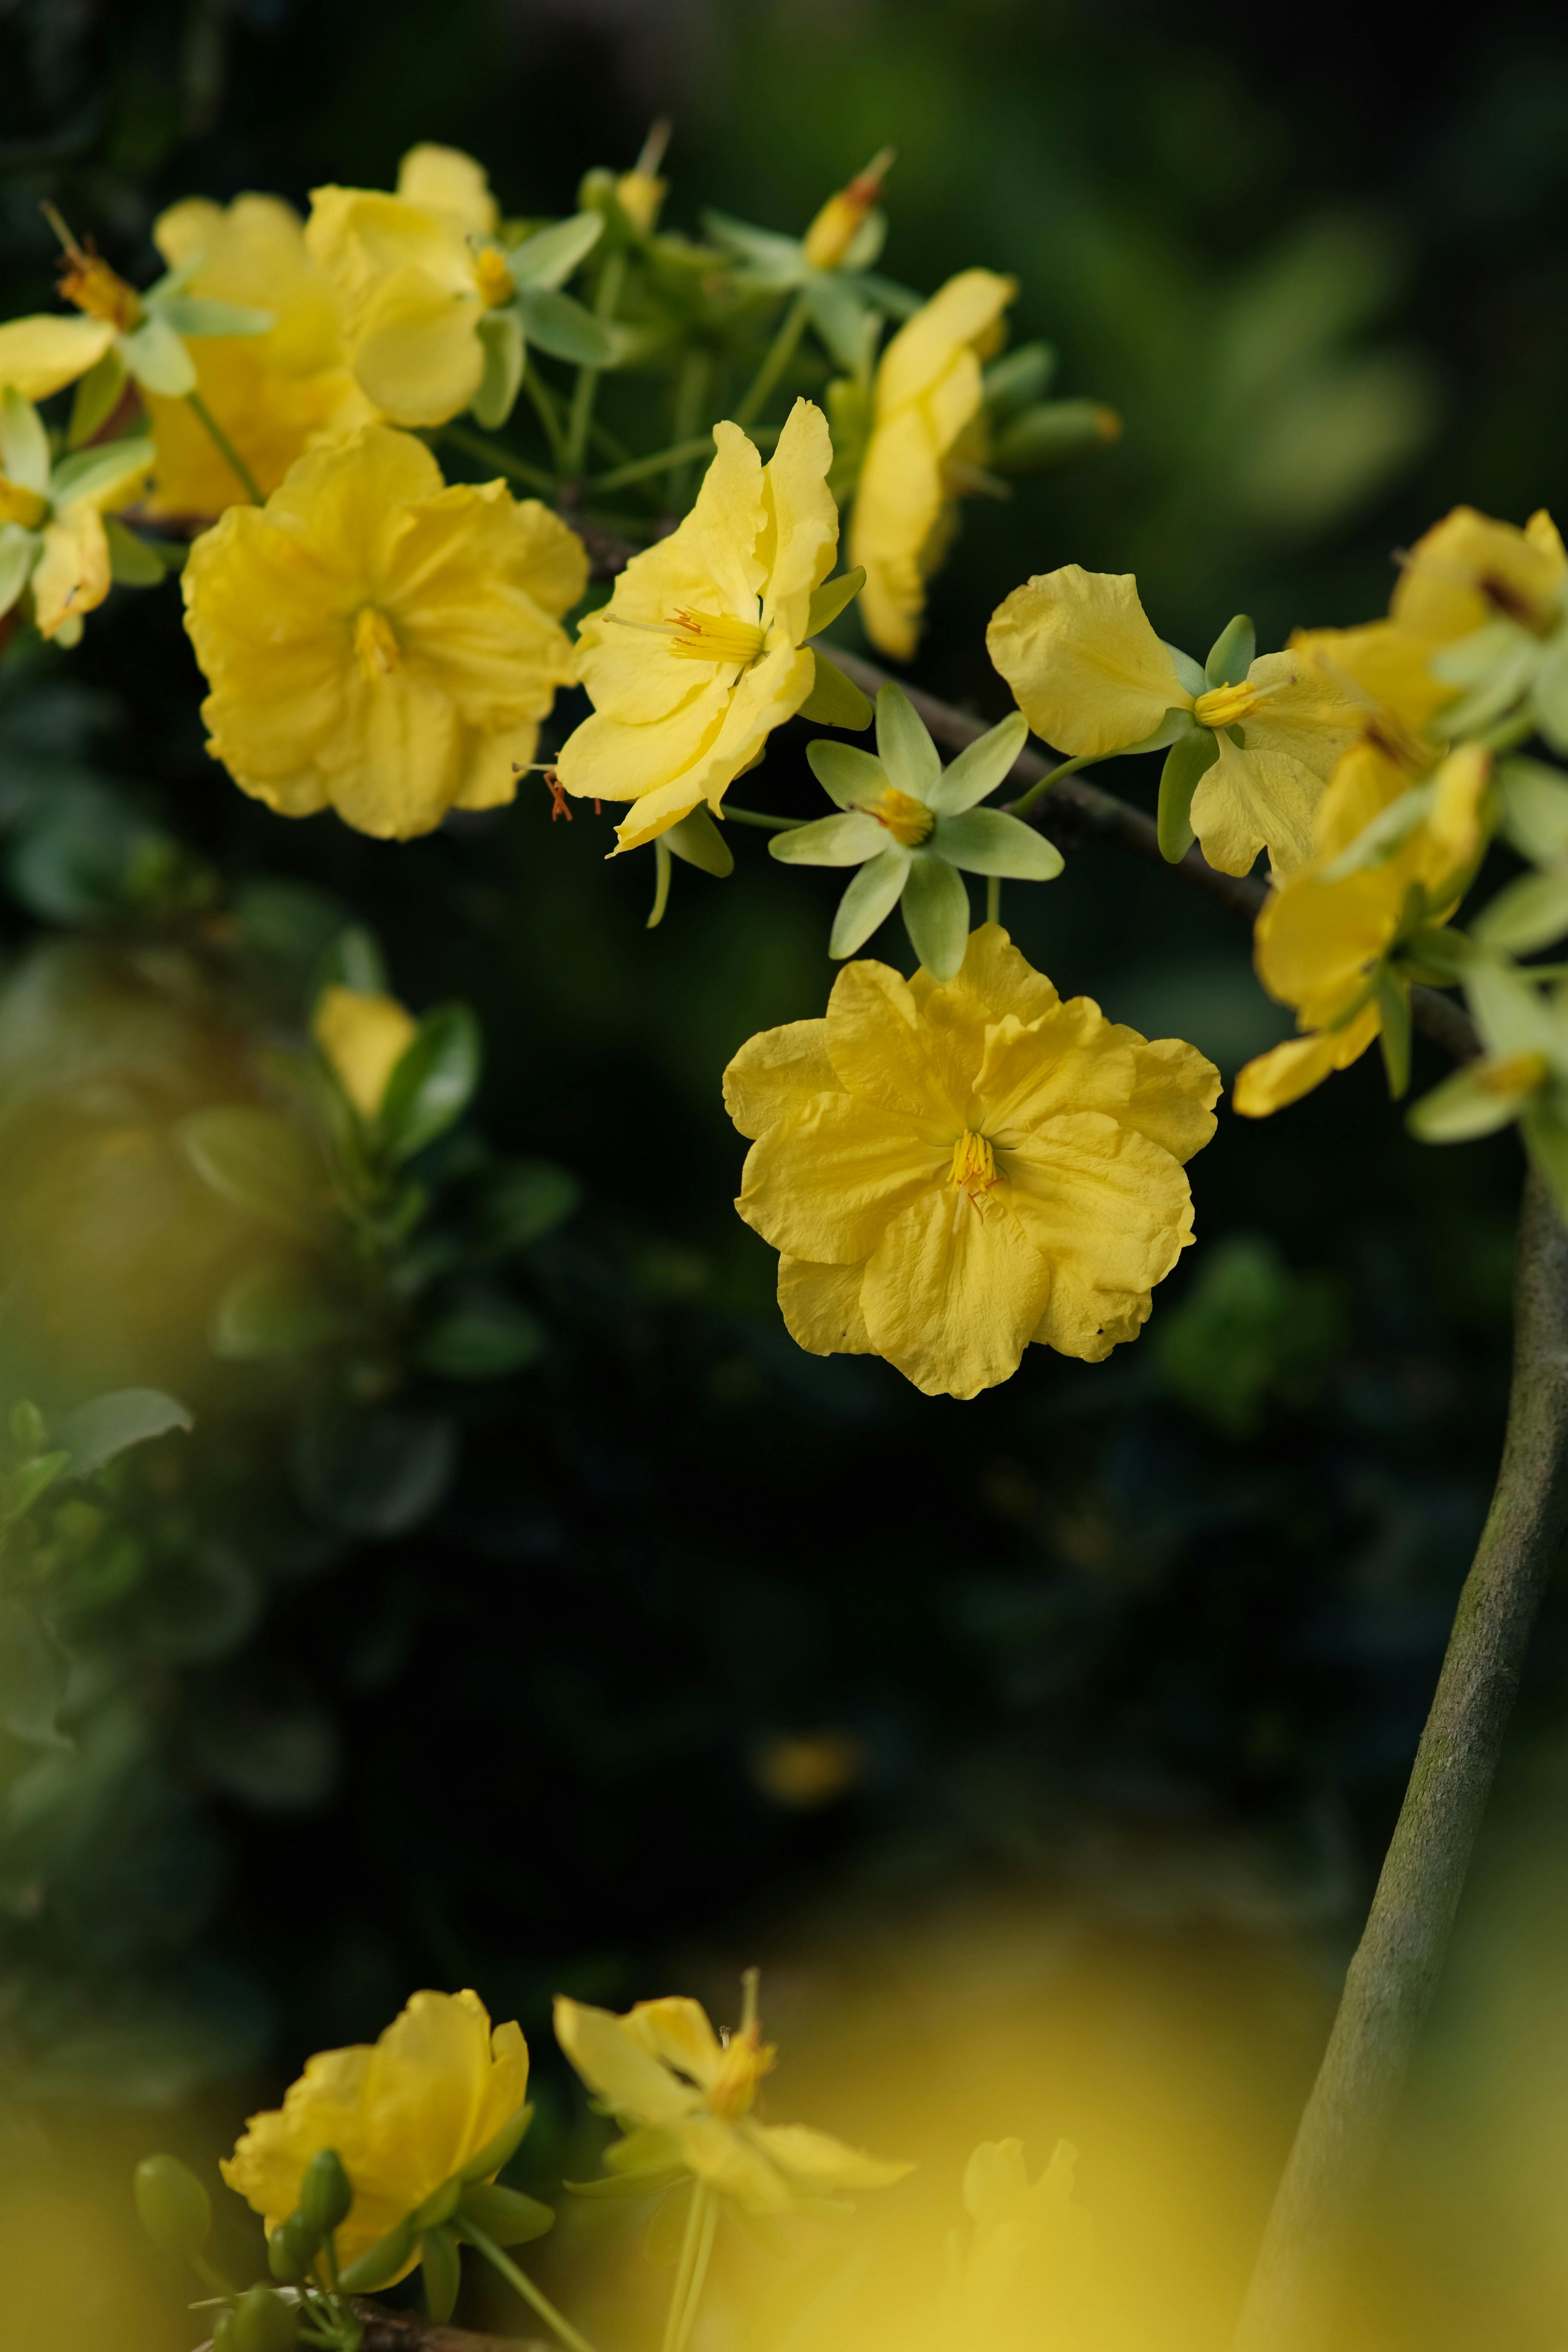 Những bông hoa vàng nhỏ sẽ đem đến cho bạn một cảm giác thần tiên và tinh tế đến khó tin. Với hình ảnh hoa vàng nhỏ đầy uyển chuyển, bạn sẽ được mải mê ngắm nhìn và cảm nhận một màu sắc mới về thiên nhiên.